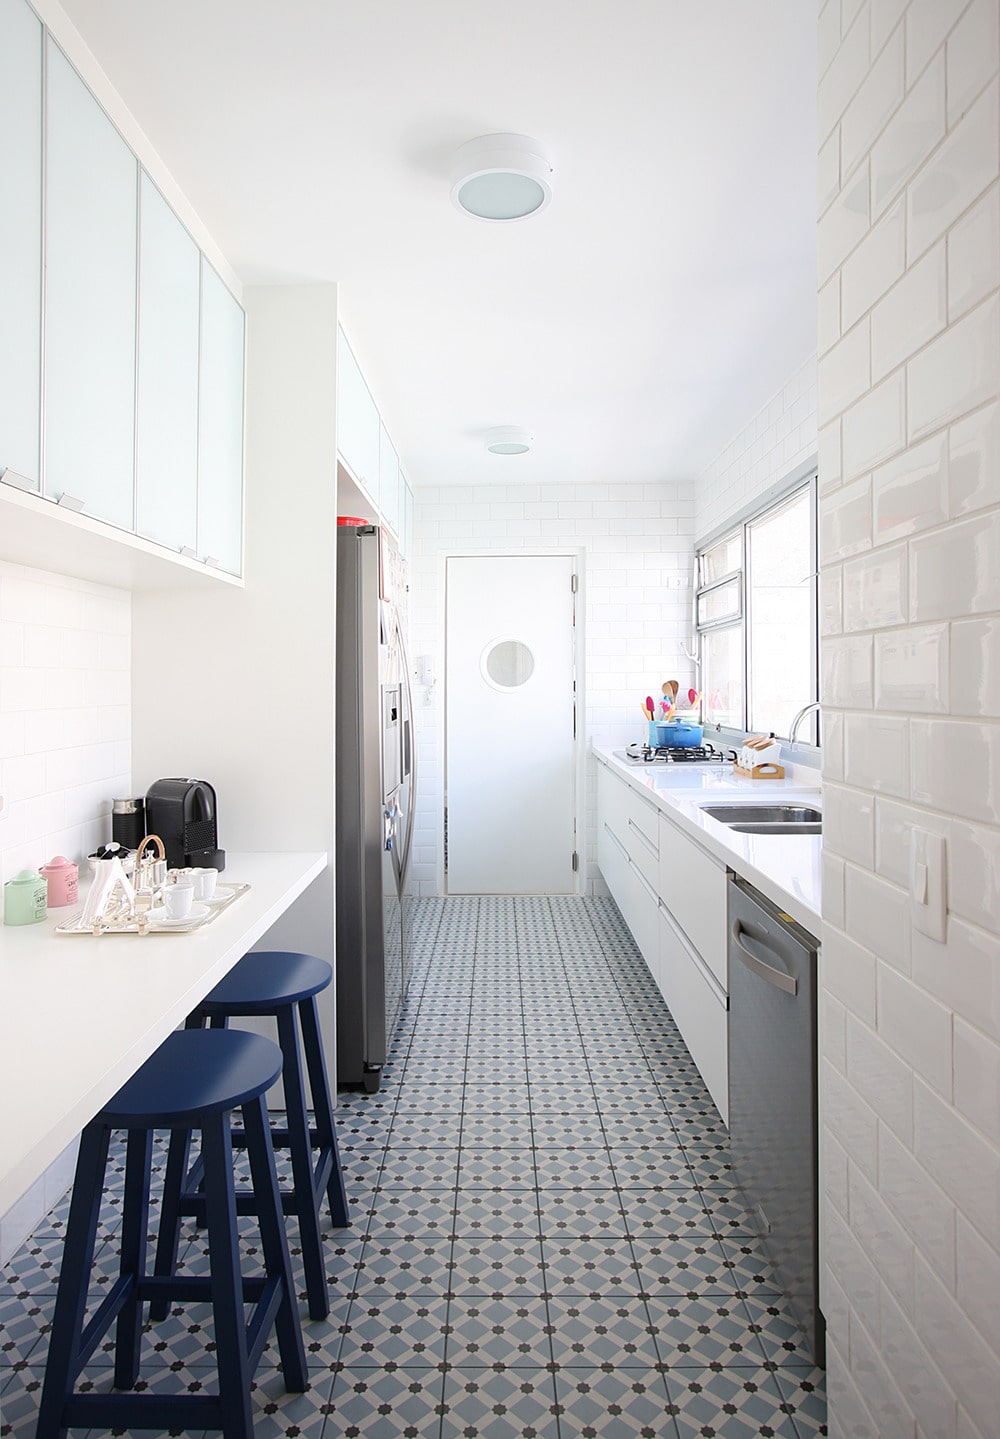 Чтобы сделать интерьер уютным, стильным и комфортным - дизайн-проект узкой кухни лучше разработать заранее